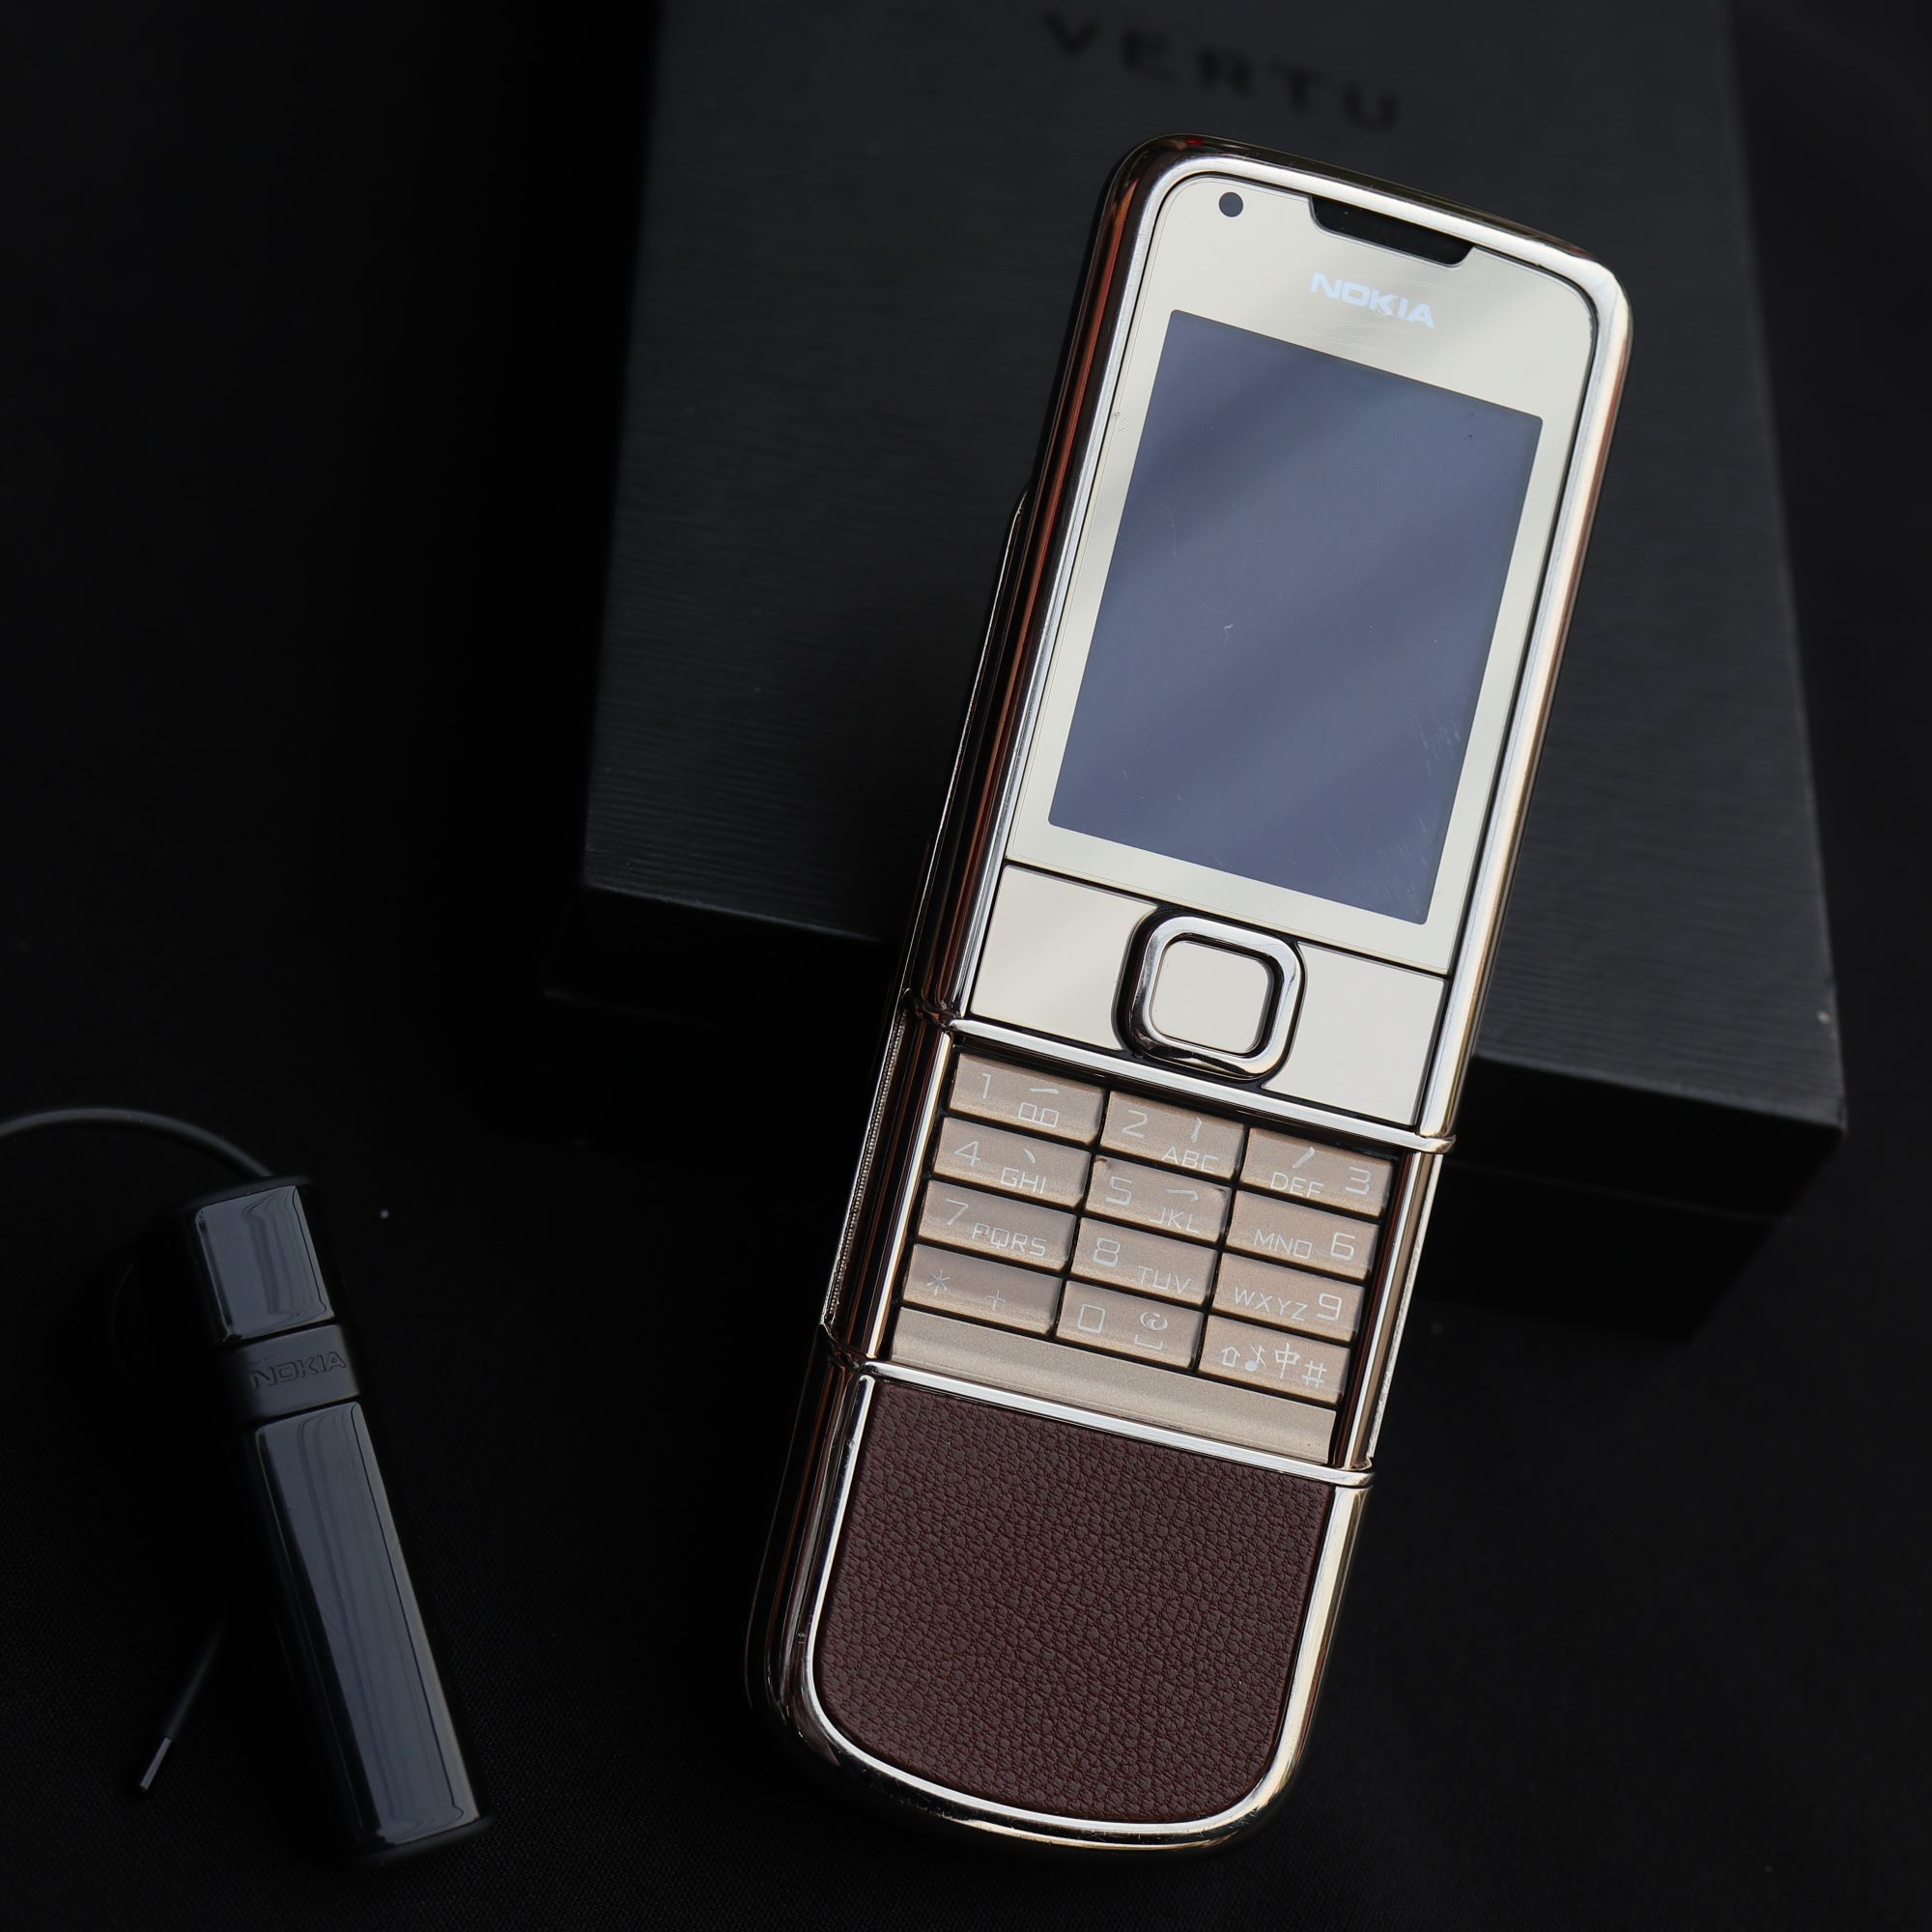 Nokia 8800 Arte da vàng bọc da nâu - sang trọng HPC - Chiêm ngưỡng sự sang trọng của điện thoại Nokia 8800 Arte với ngoại hình bọc da nâu trang trọng. Họa tiết vàng óng ỏa sẽ khiến người xem ấn tượng ngay từ cái nhìn đầu tiên.